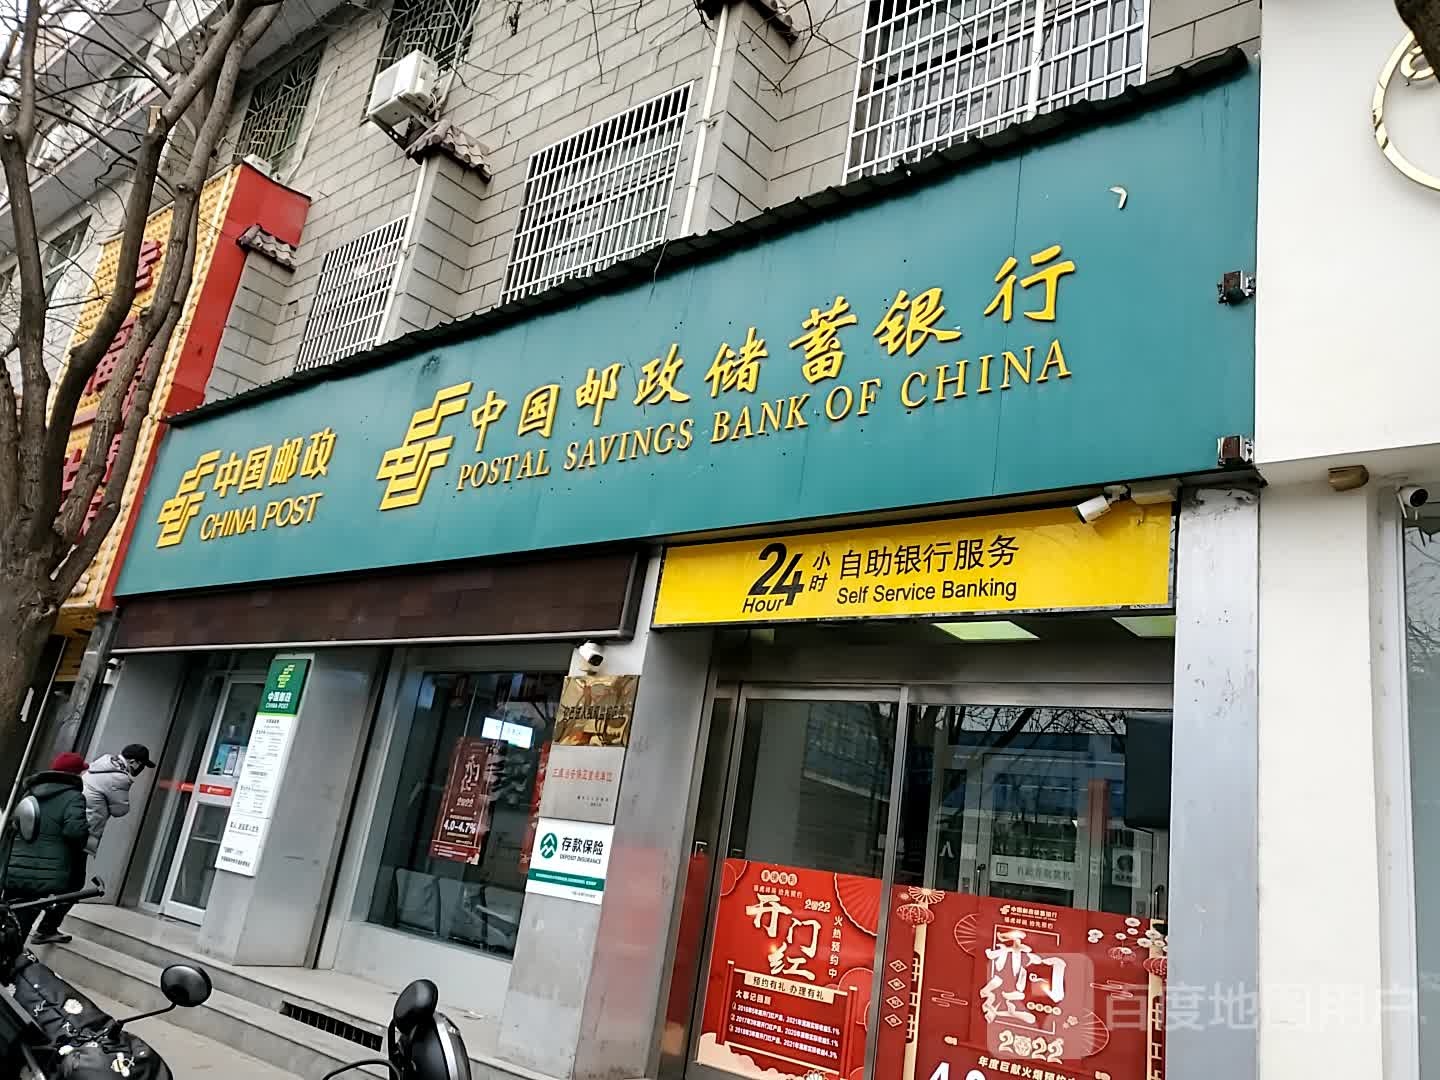 中国邮政储蓄银行24小时自助银行(华原营业所)